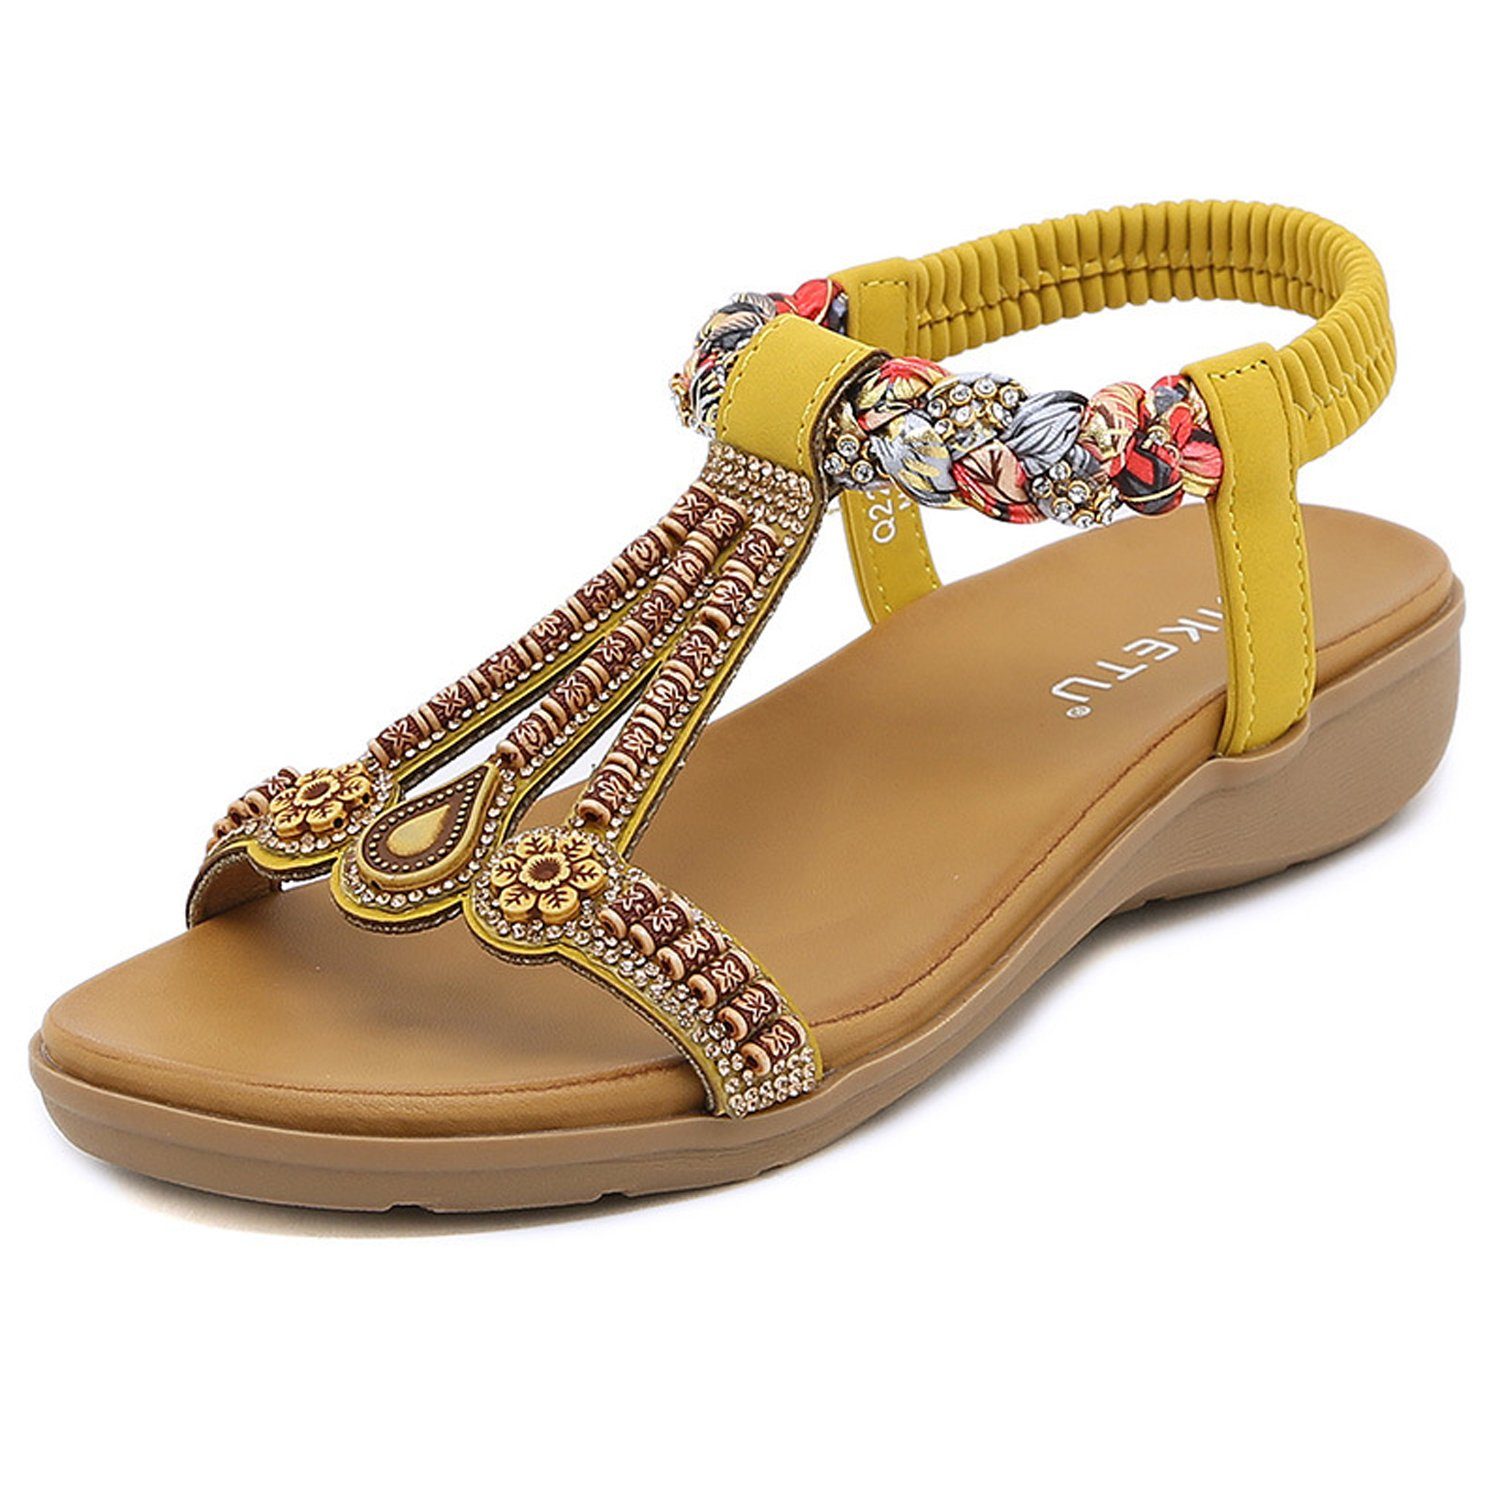 MAGICSHE Sandalen im ethnischen Stil Riemchensandale Geflecht, Perleneinlage gelb